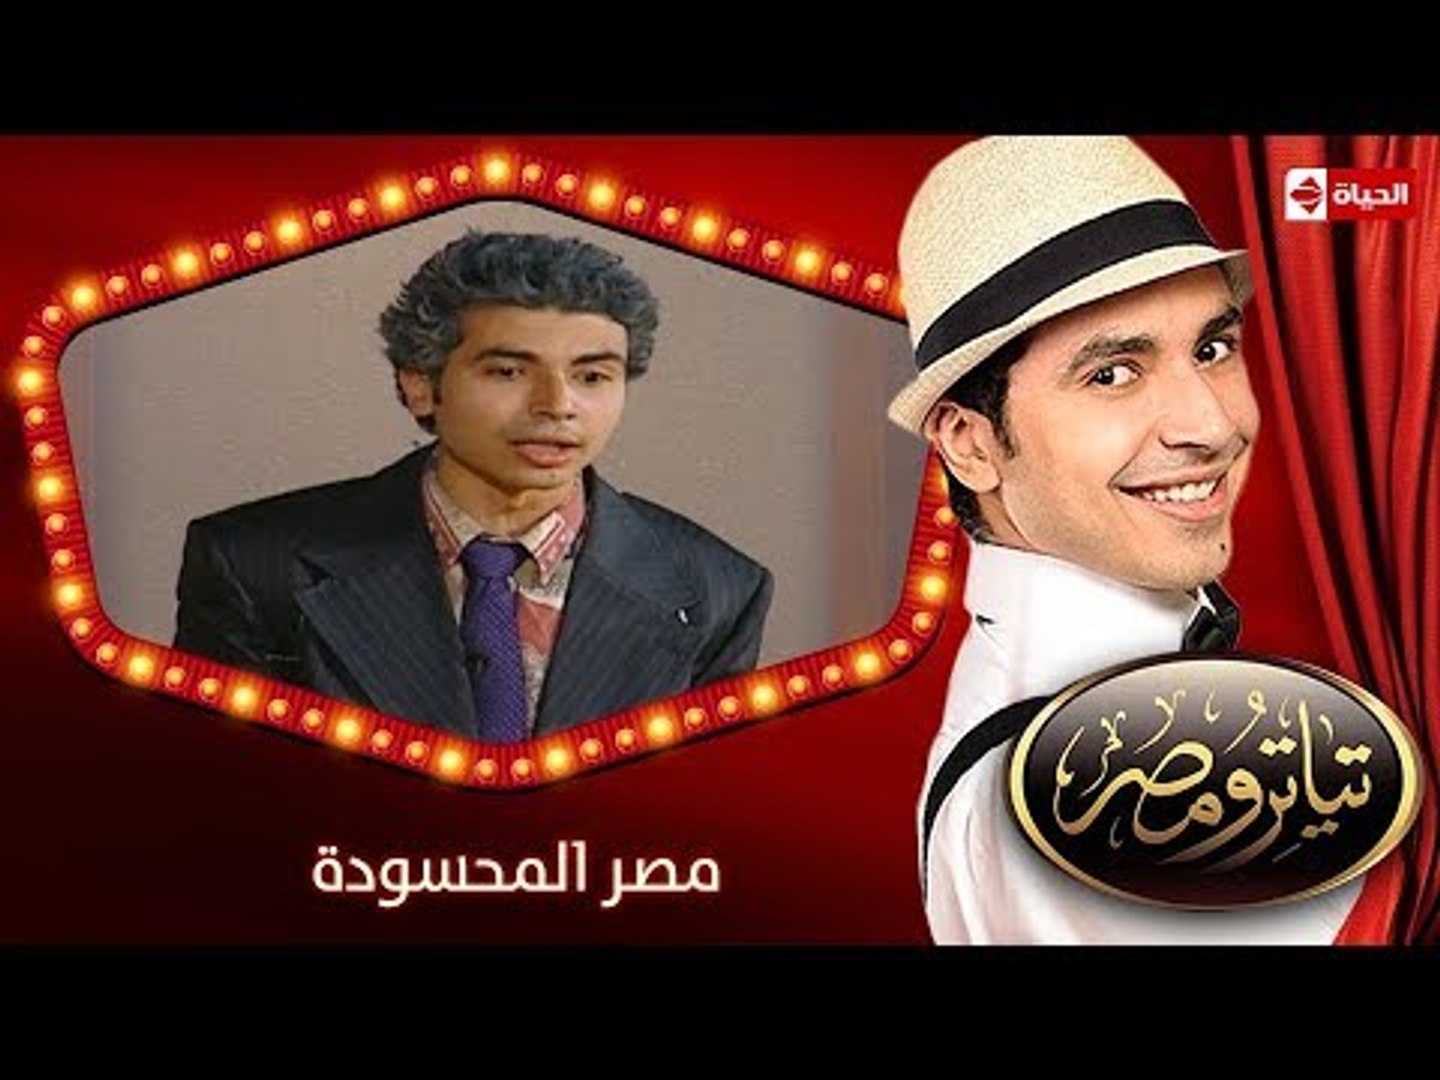 تياترو مصر | الموسم الأول | الحلقة 16 السادسة عشر | مصر المحسودة |محمد  أنور| Teatro Masr - video Dailymotion